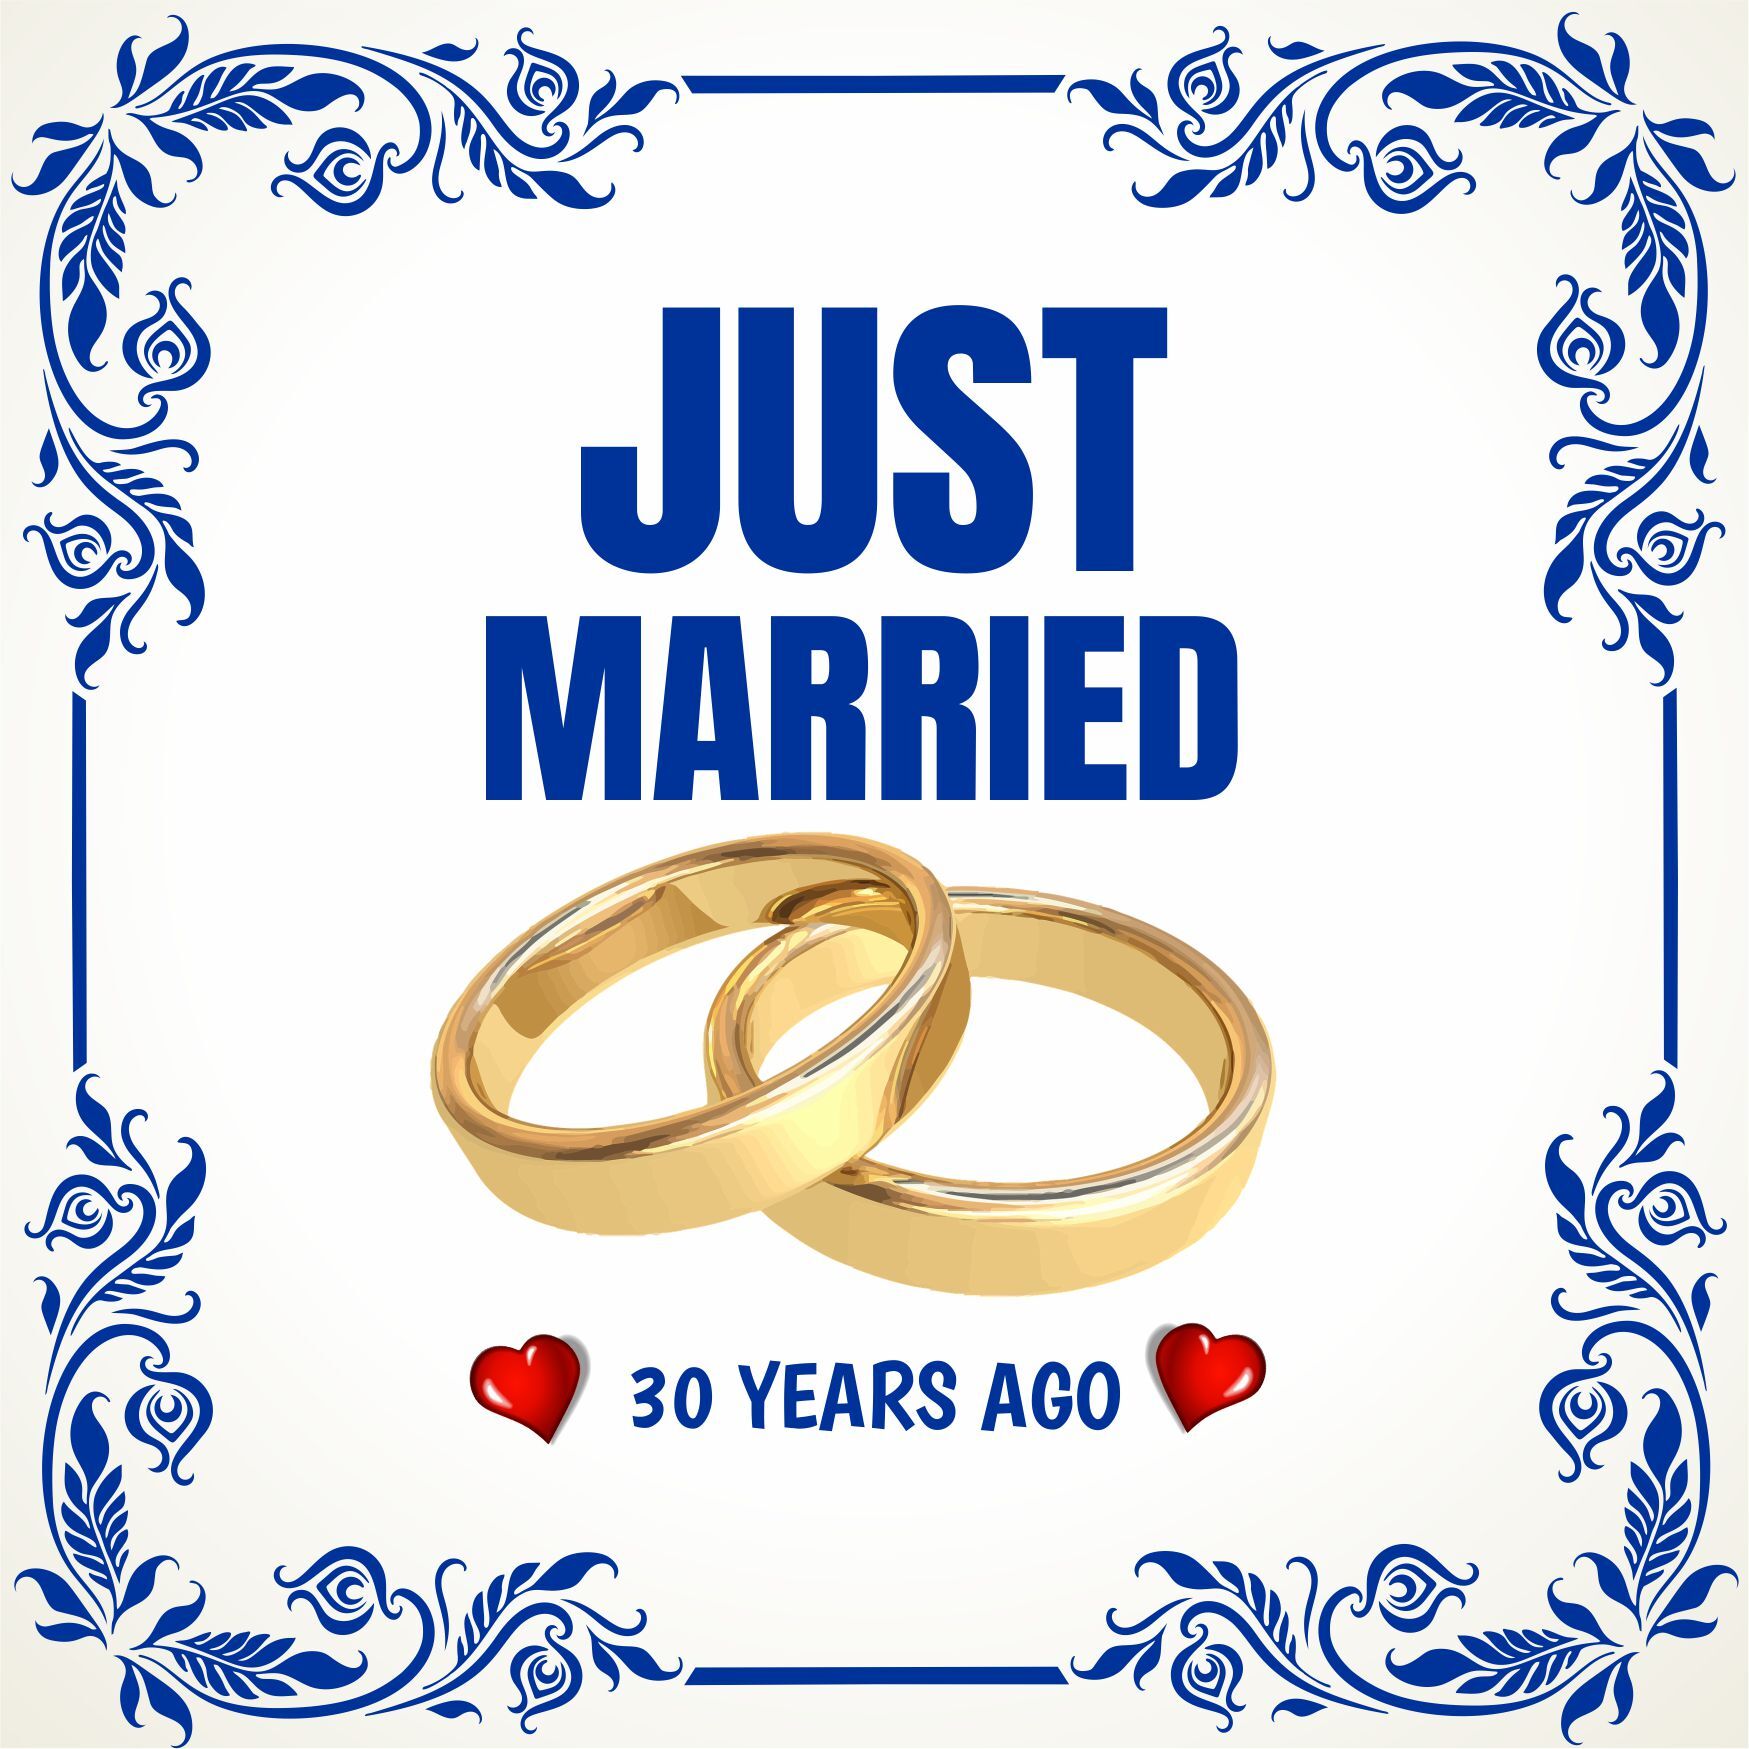 Tegel just married 30 years ago pas getrouwd 30 jaar geleden